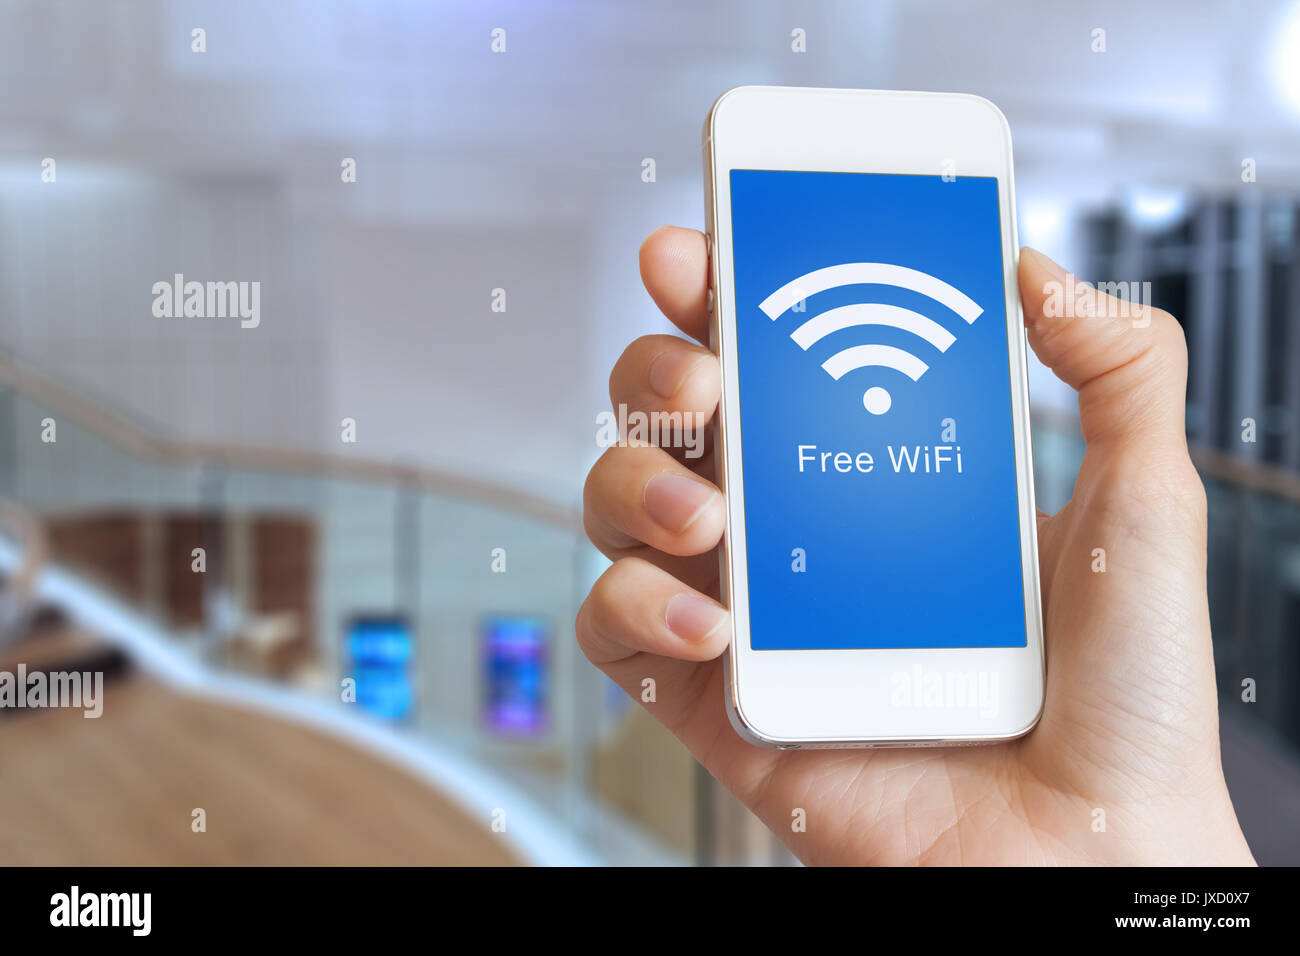 Close-up of hand holding smartphone avec connexion Wi-Fi gratuite via hotspot icône sur l'écran pour se connecter à internet sans fil, de l'intérieur de l'édifice en arrière-plan Banque D'Images